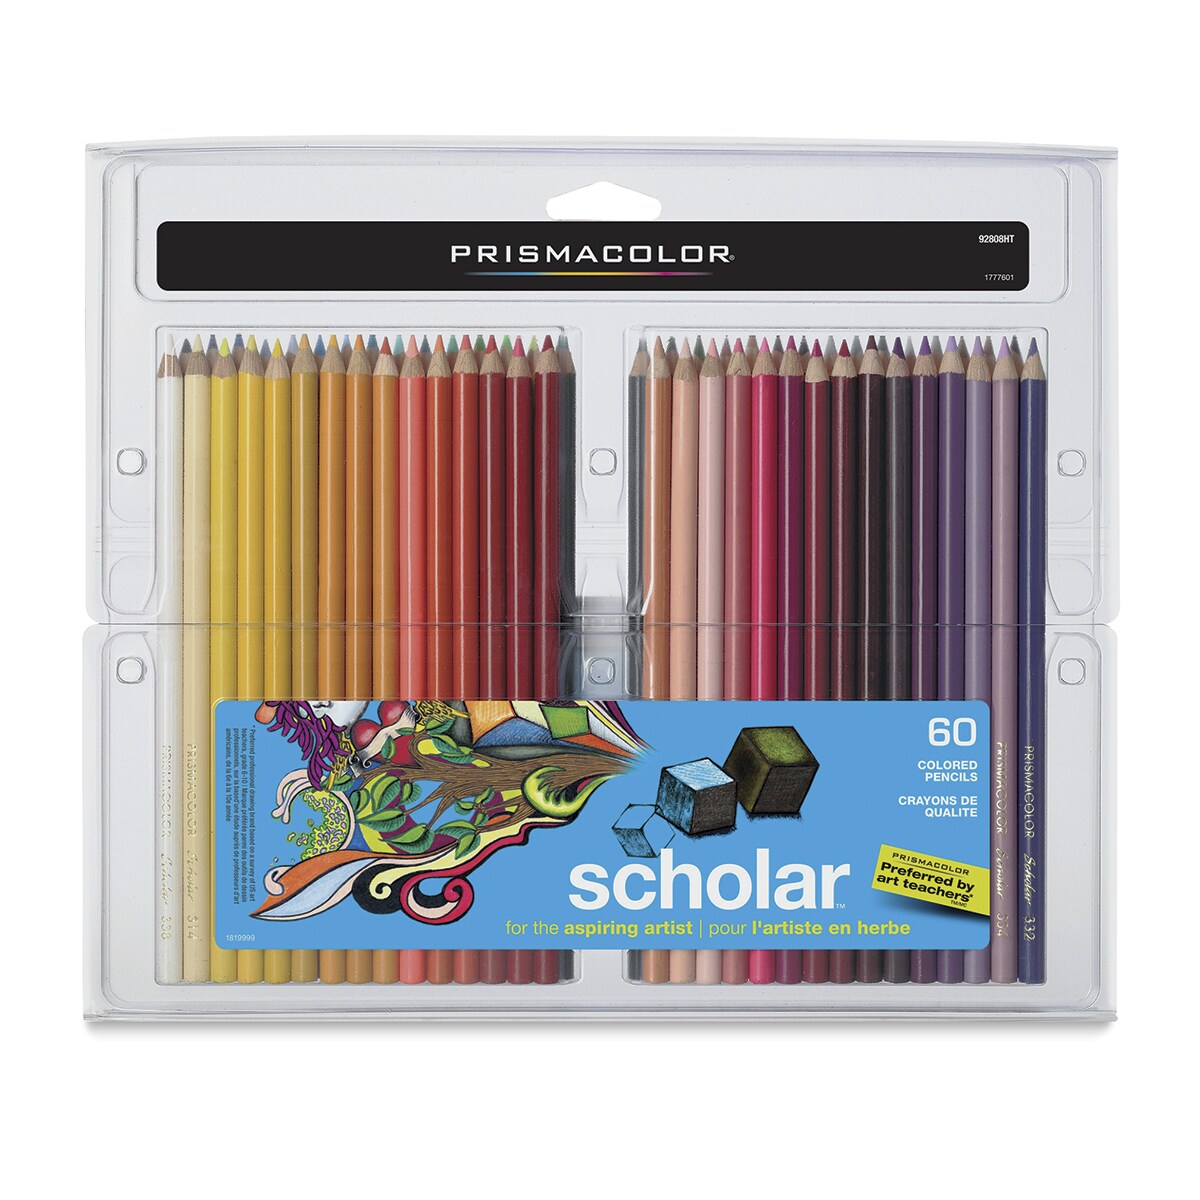 Prismacolor Scholar Art Pencil Set - Assorted Colors, Set of 60